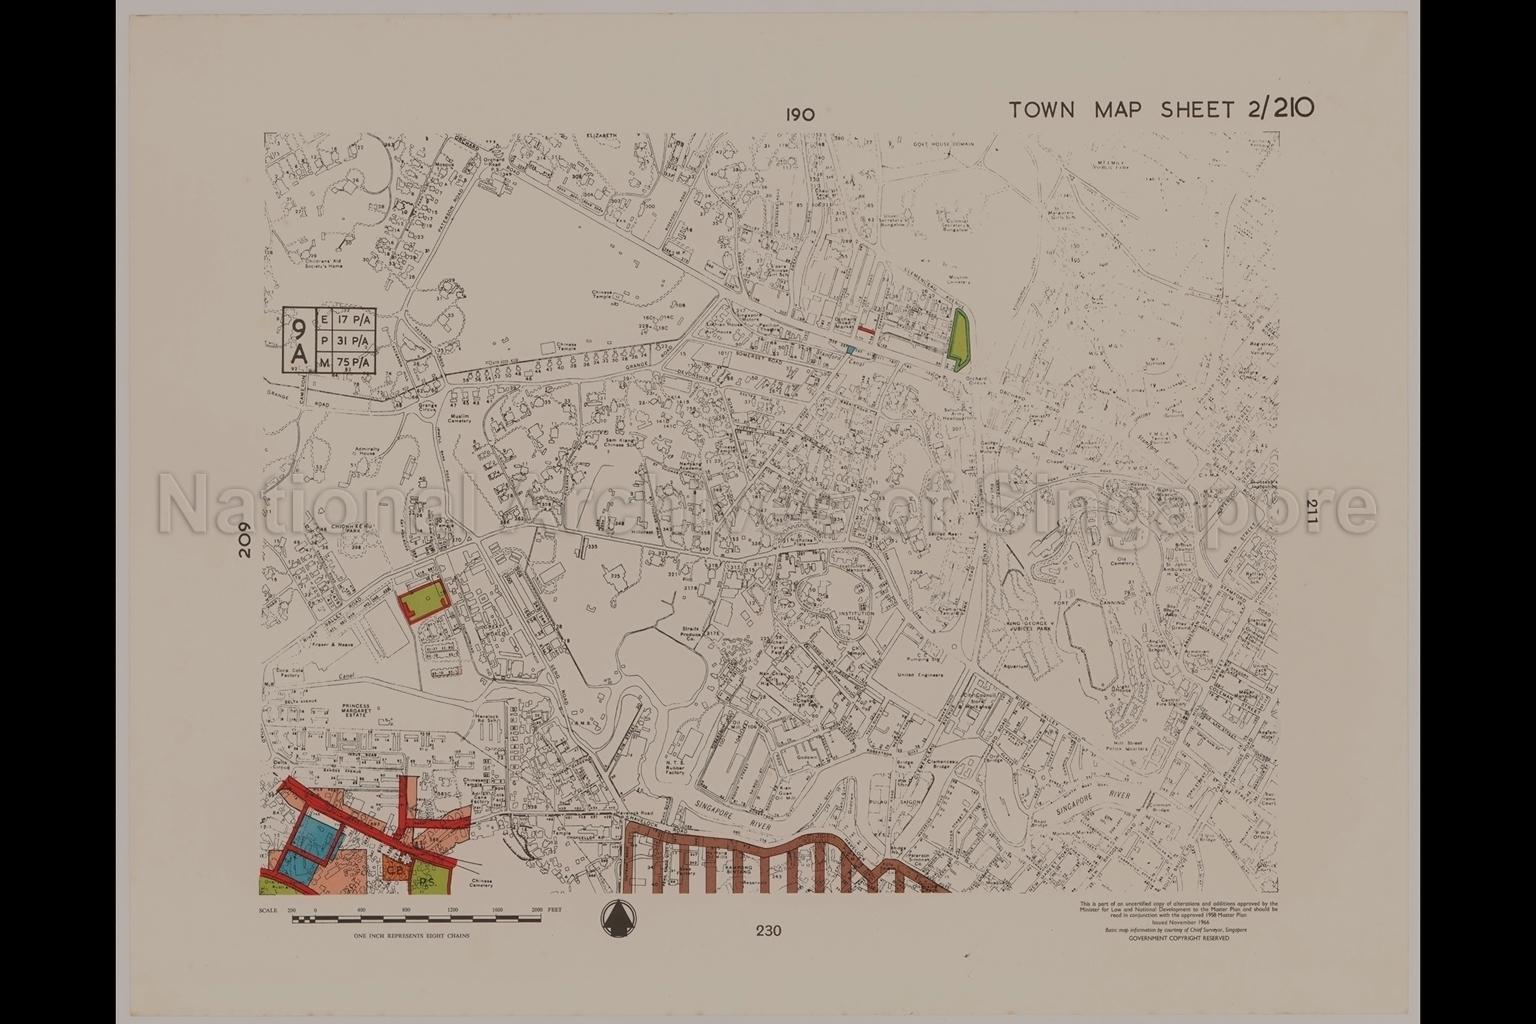 1958 Master Plan - Town Map Sheet 2/210